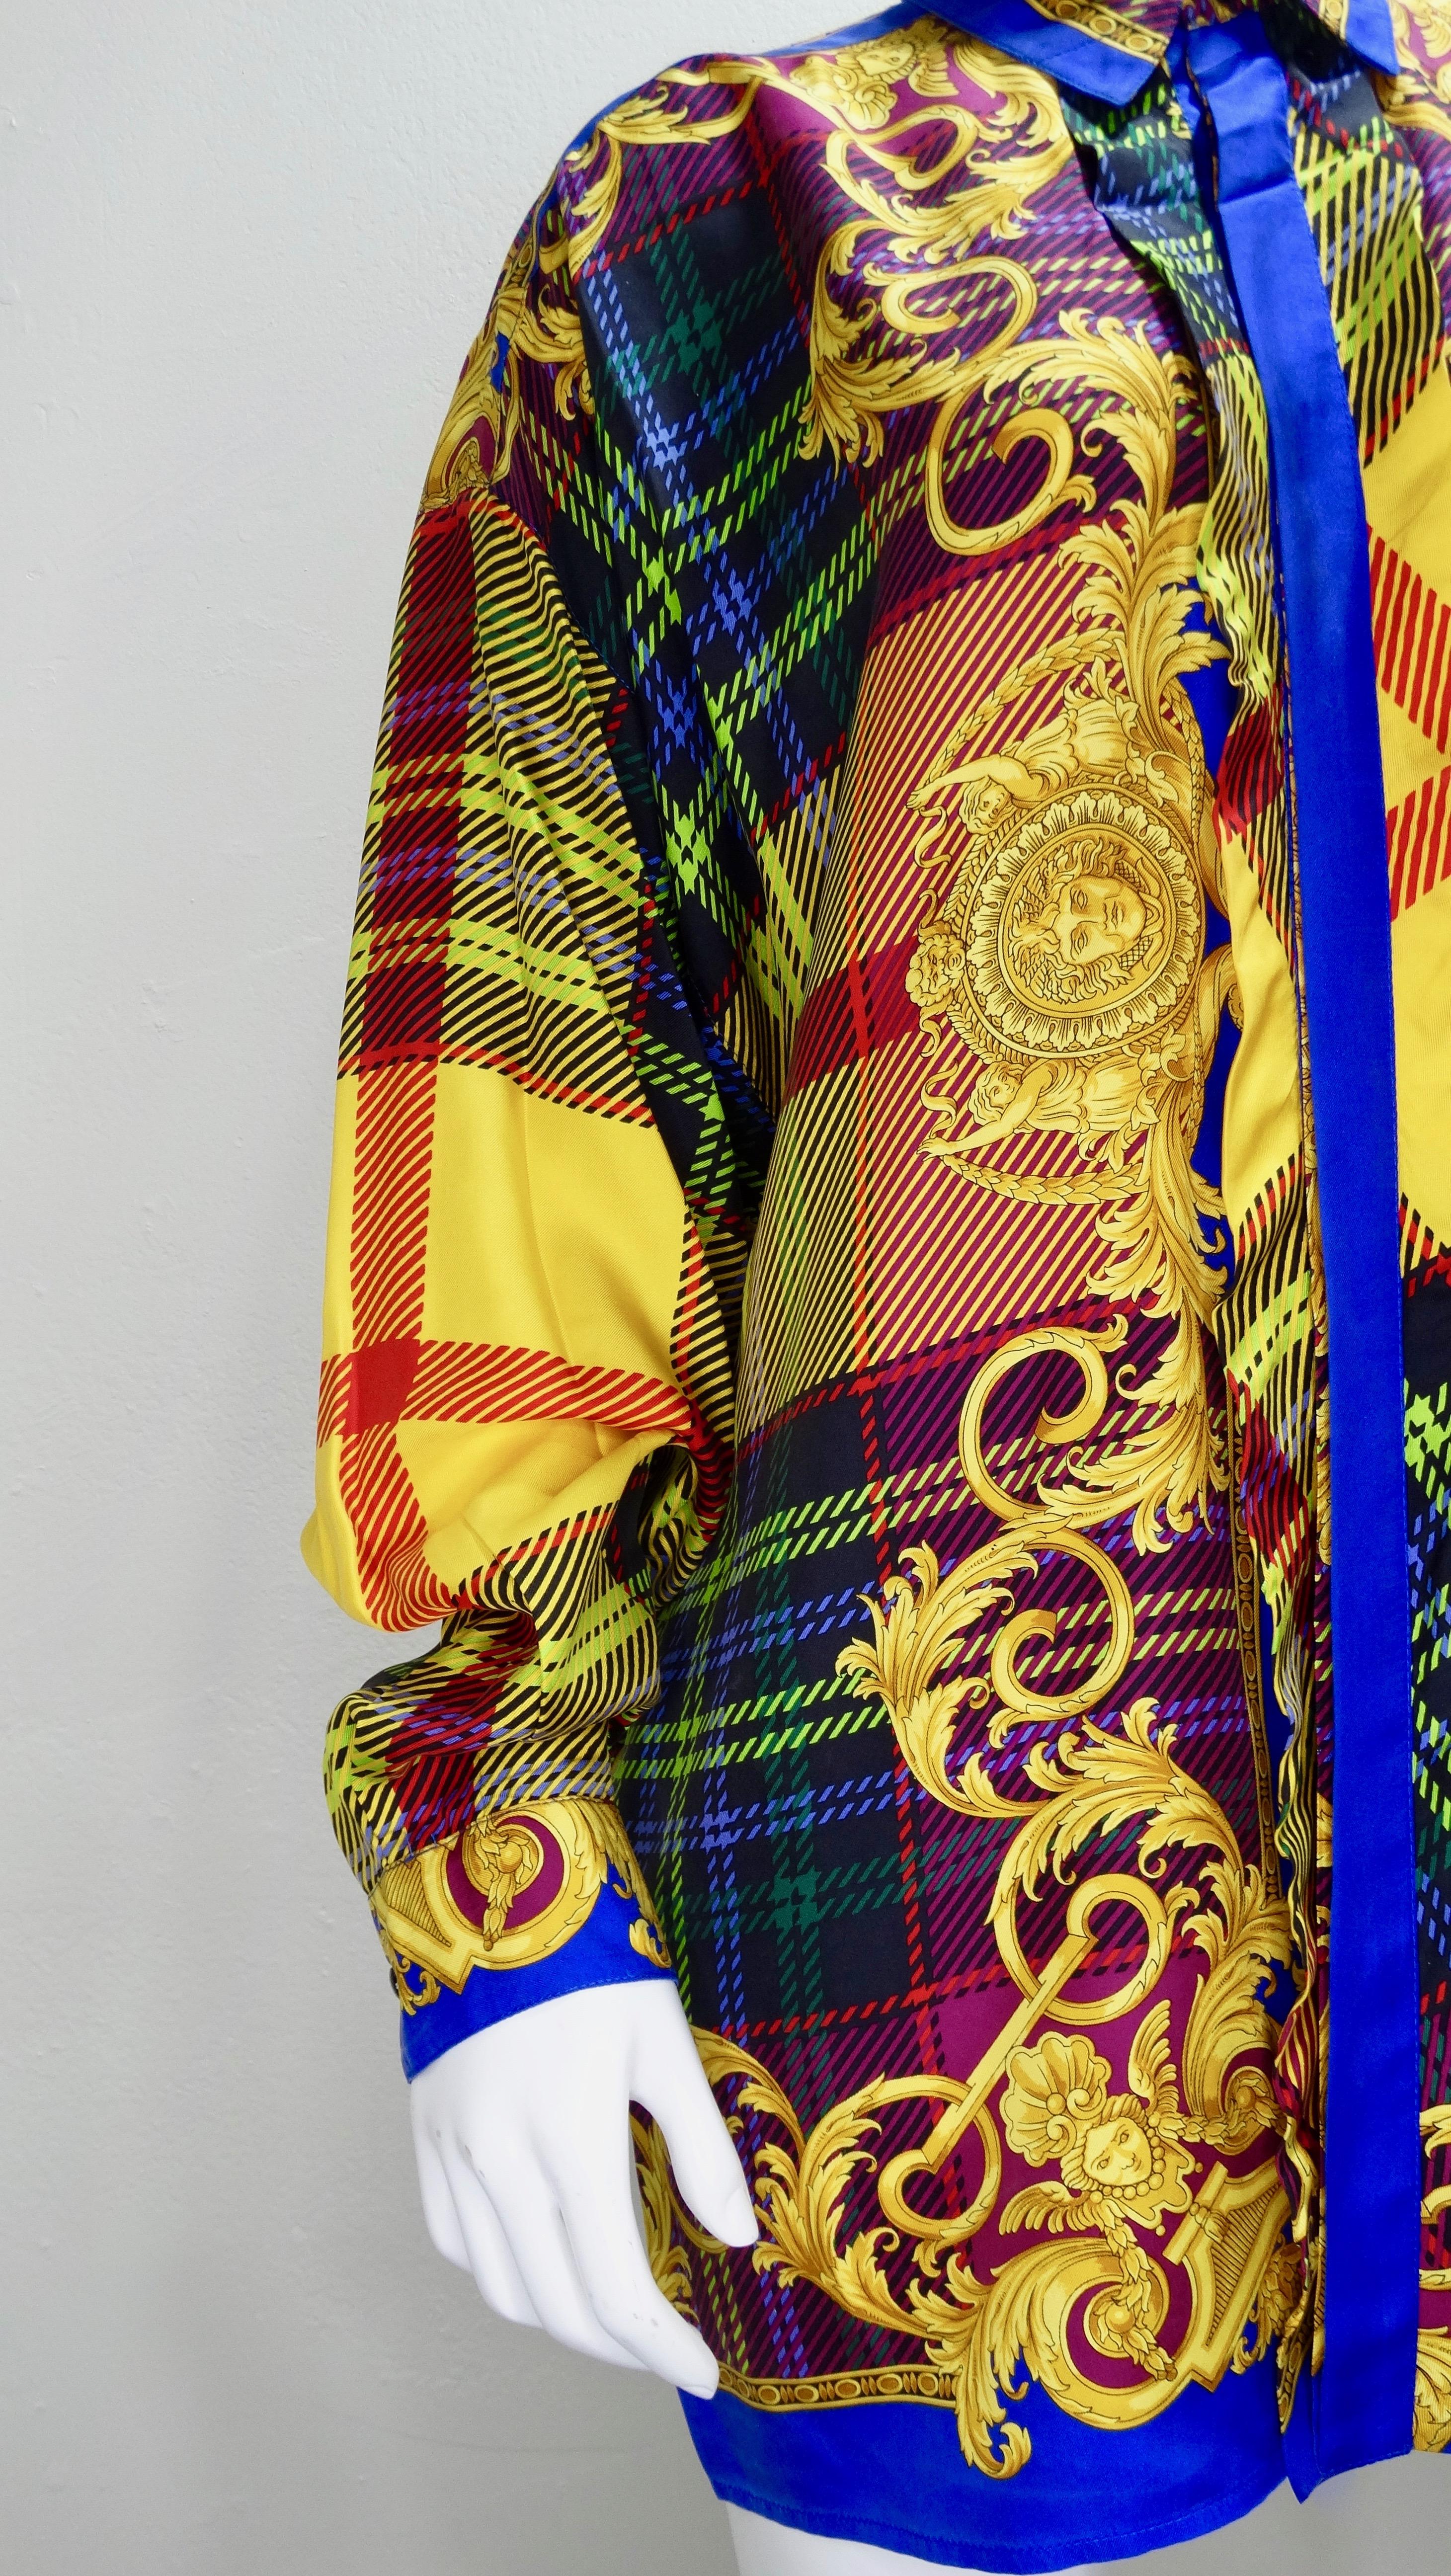 Gianni Versace 1990, cette chemise boutonnée en soie colorée présente un imprimé à carreaux multicolores superposés, mélangé aux motifs baroques et aux têtes de Méduse emblématiques de Versace. Il comporte une fermeture à boutons cachés sur le